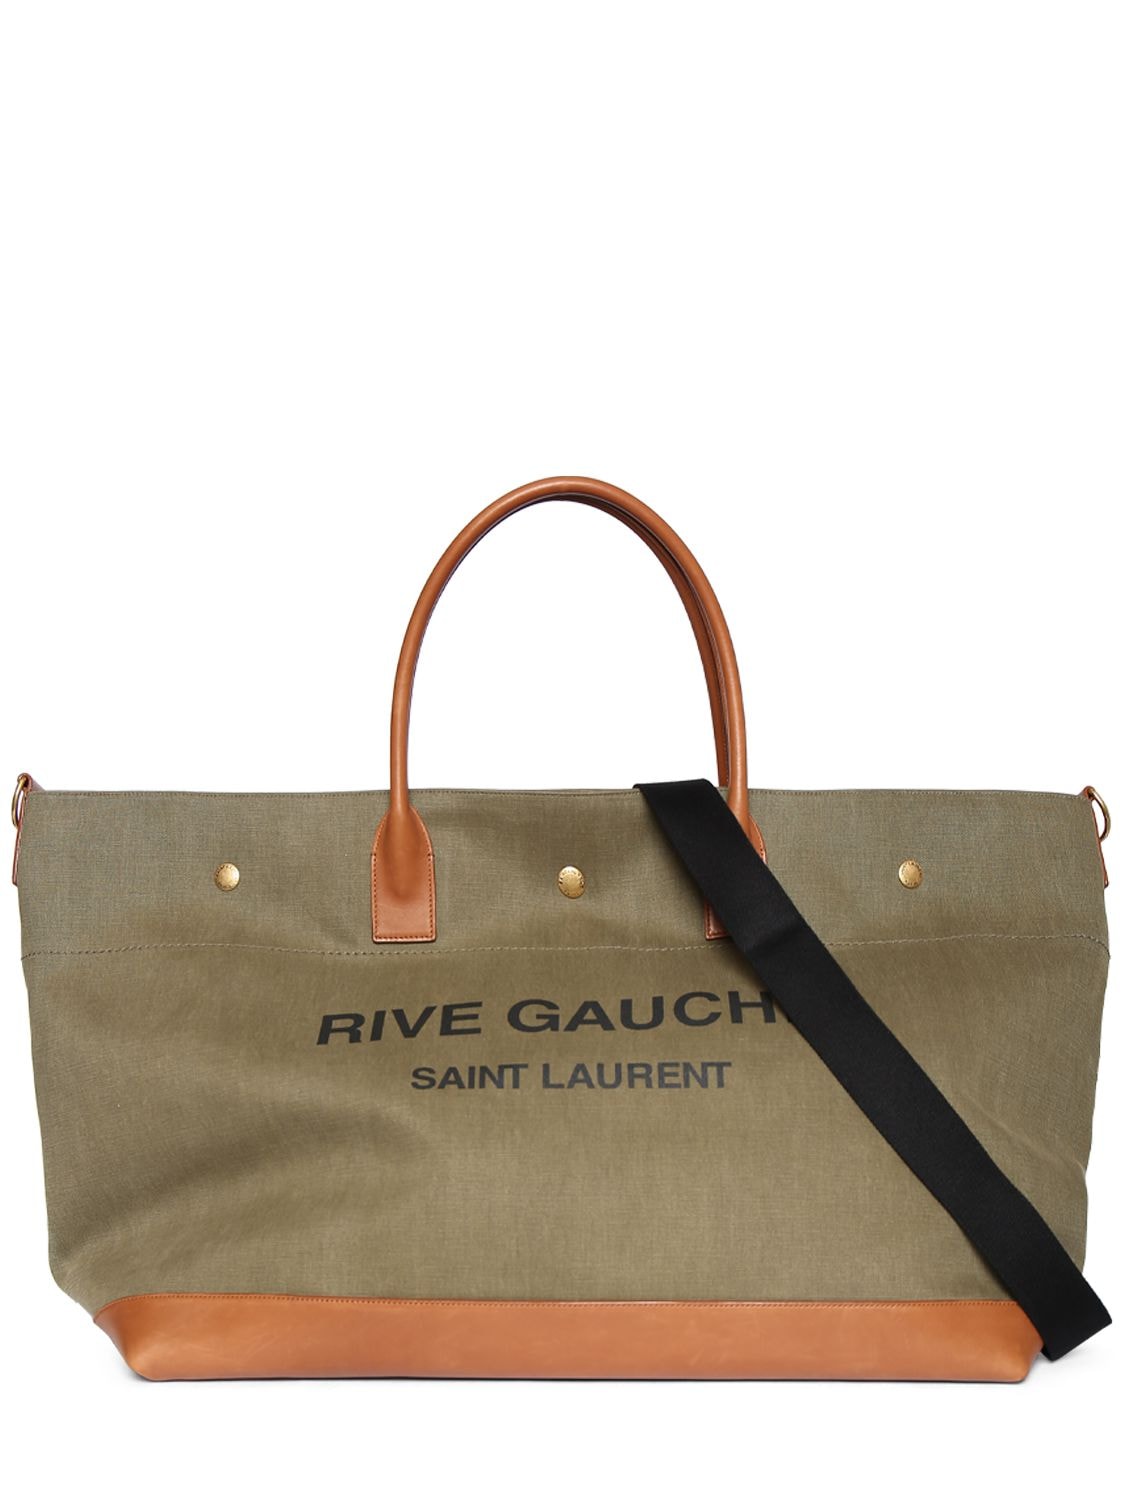 Saint Laurent 'rive Gauche' Tote Bag in Brown